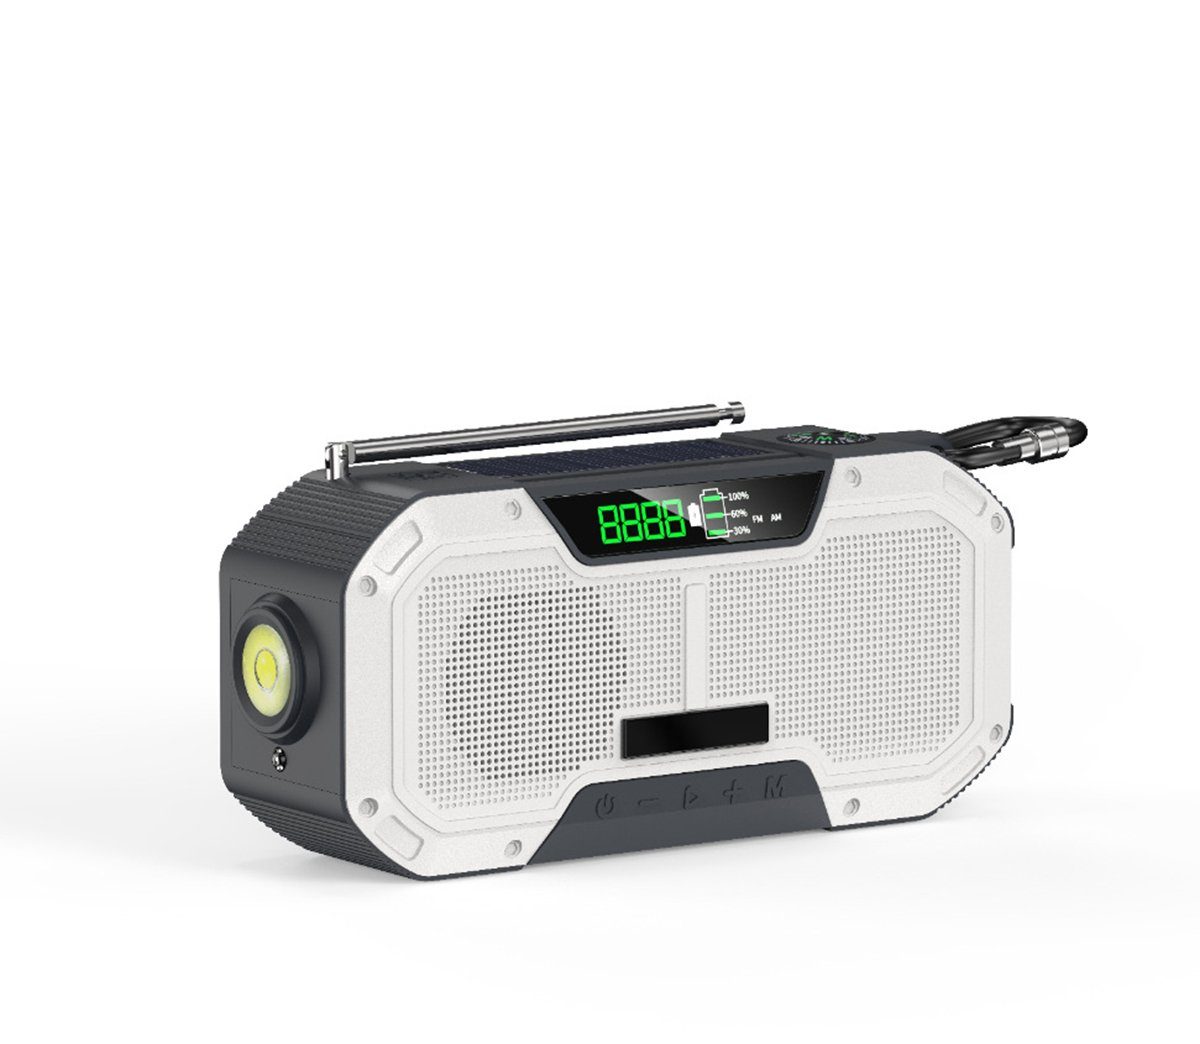 Stroboskoplicht,Taschenlampe wasserdichter IPX5 Bluetooth-Lautsprecher mit EQ Auto-Scan FM/AM Kurbelradio mit Handyladefunktion Solar Tragbares Dynamo Notfallradio Leselampe 4000mAh Powerbank 